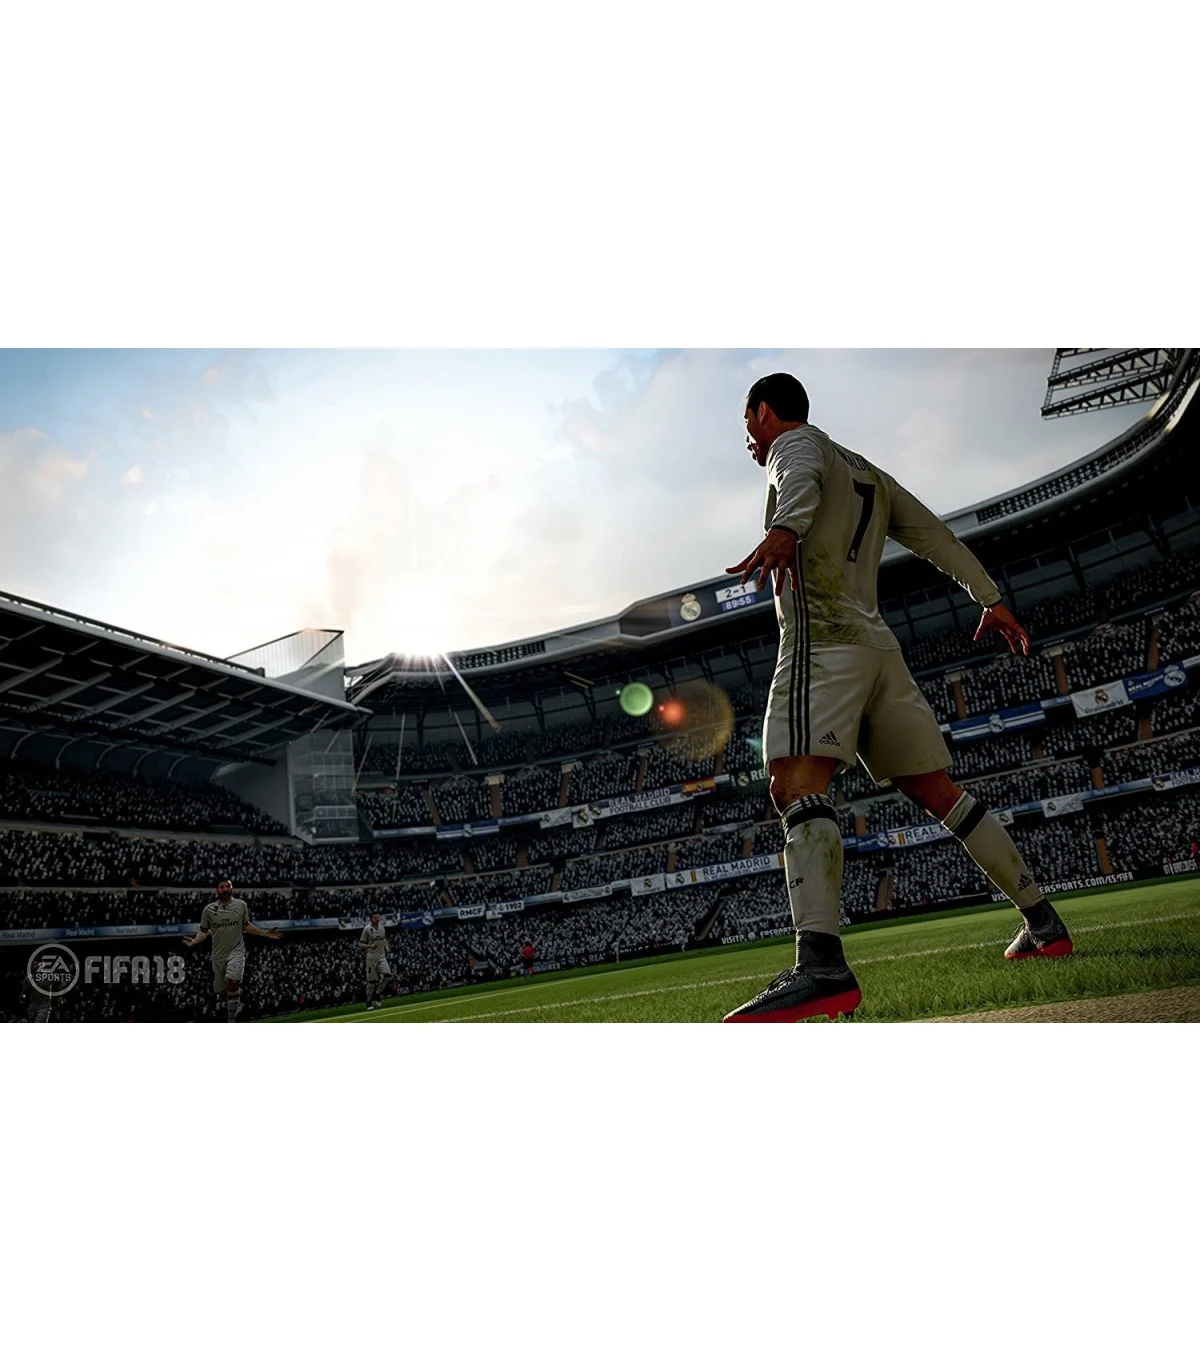 بازی FIFA 18 کارکرده (دست دوم) - پلی استیشن 4